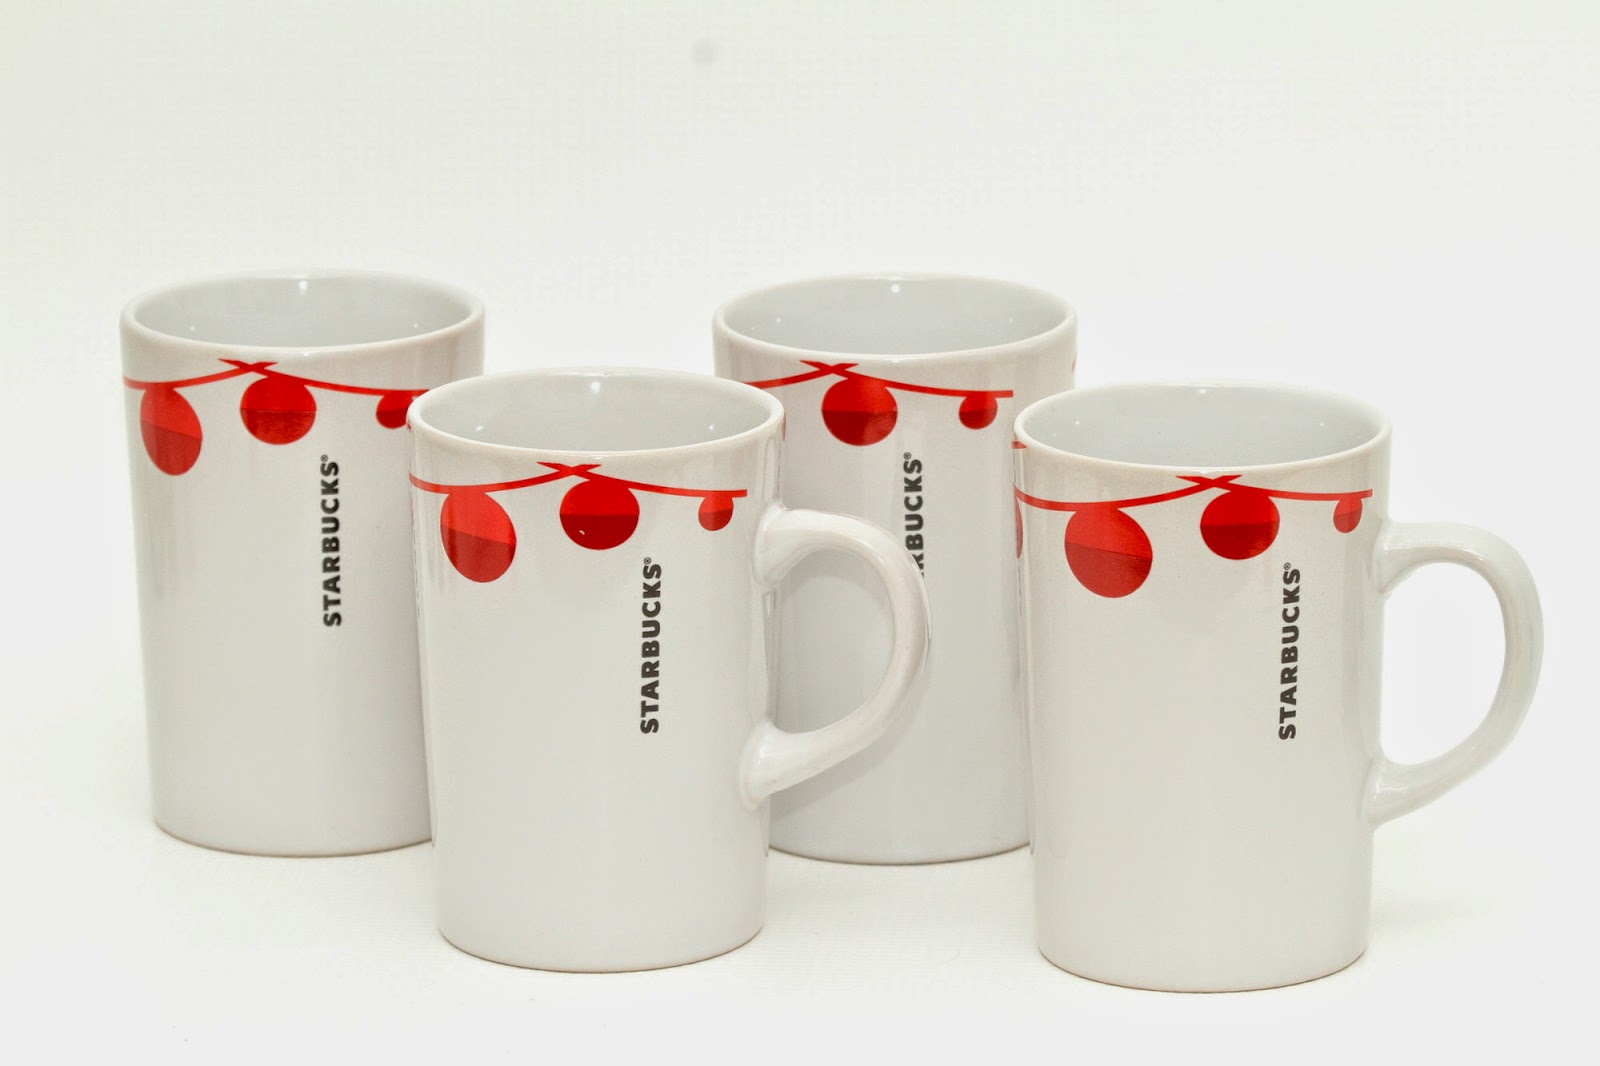 Starbucks 2012 Christmas Ornament Coffee Mugs - Buy This!